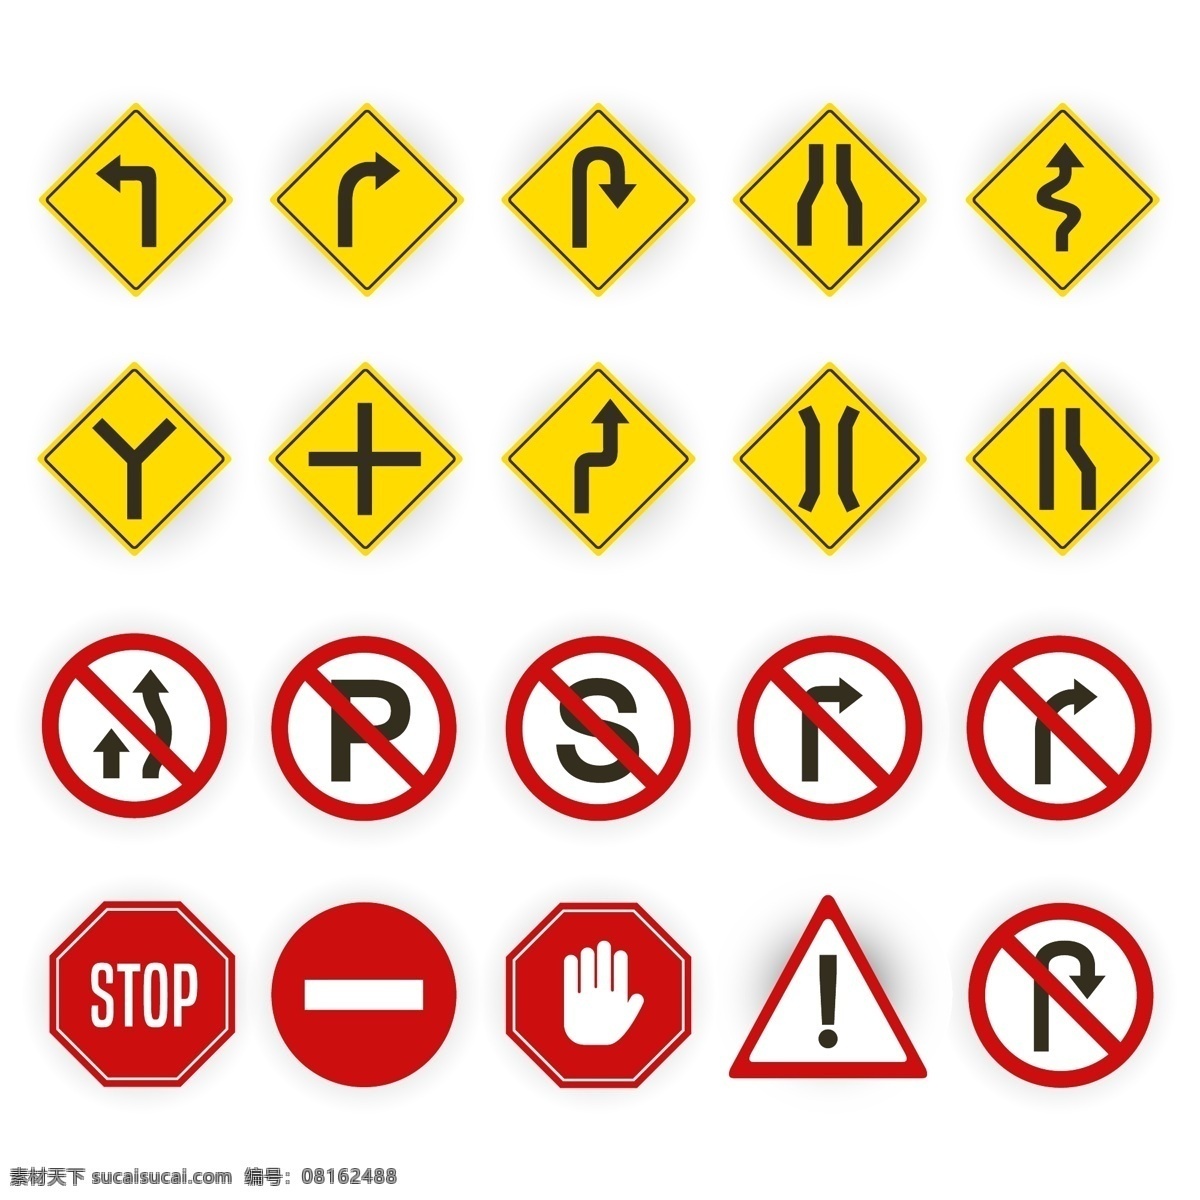 路标合集 背景 海报 宣传册 宣传画 绿色 标志 城市 街道 高速公路 交通 路标 招牌 交通运输 框架 边框 广告牌 目的地 标识 方向 路边 指针 指标 警告 警告牌 图标 标牌 指示牌